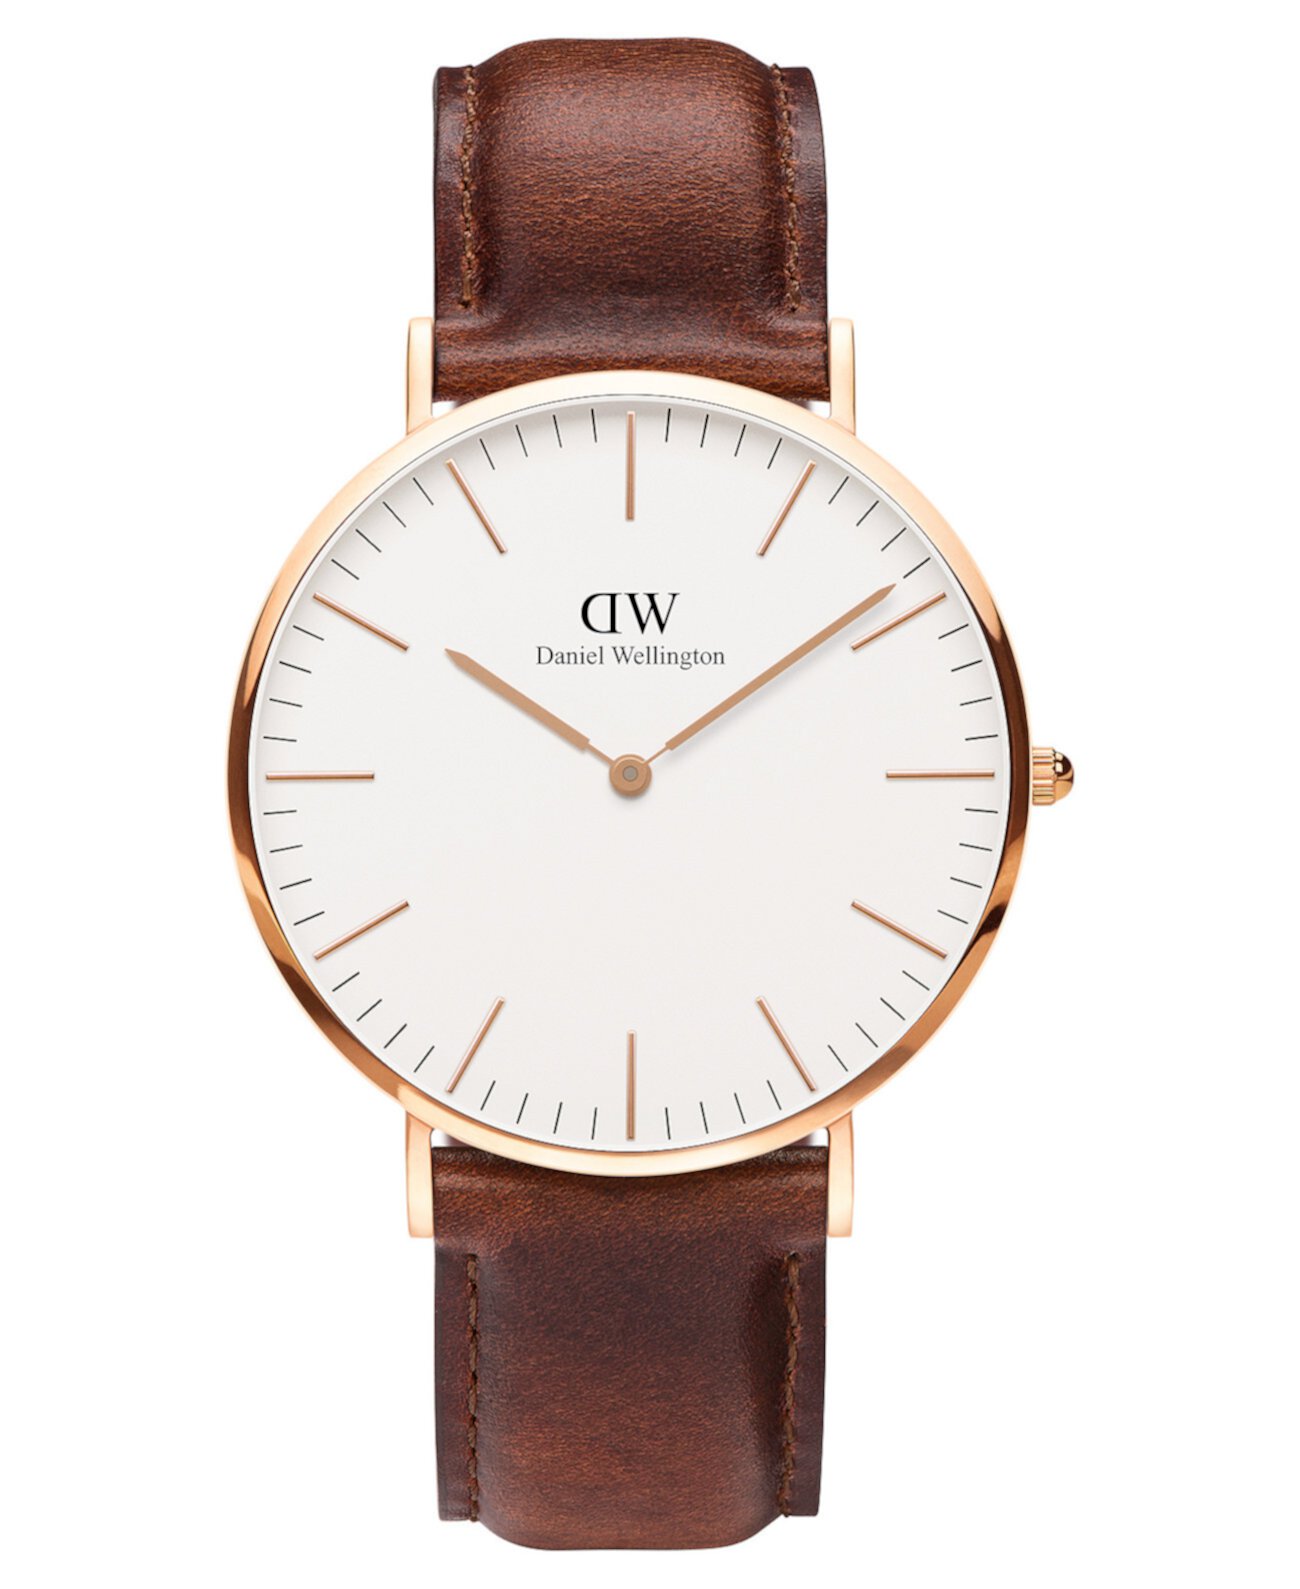 Мужские классические коричневые кожаные часы Mawes 40 мм Daniel Wellington